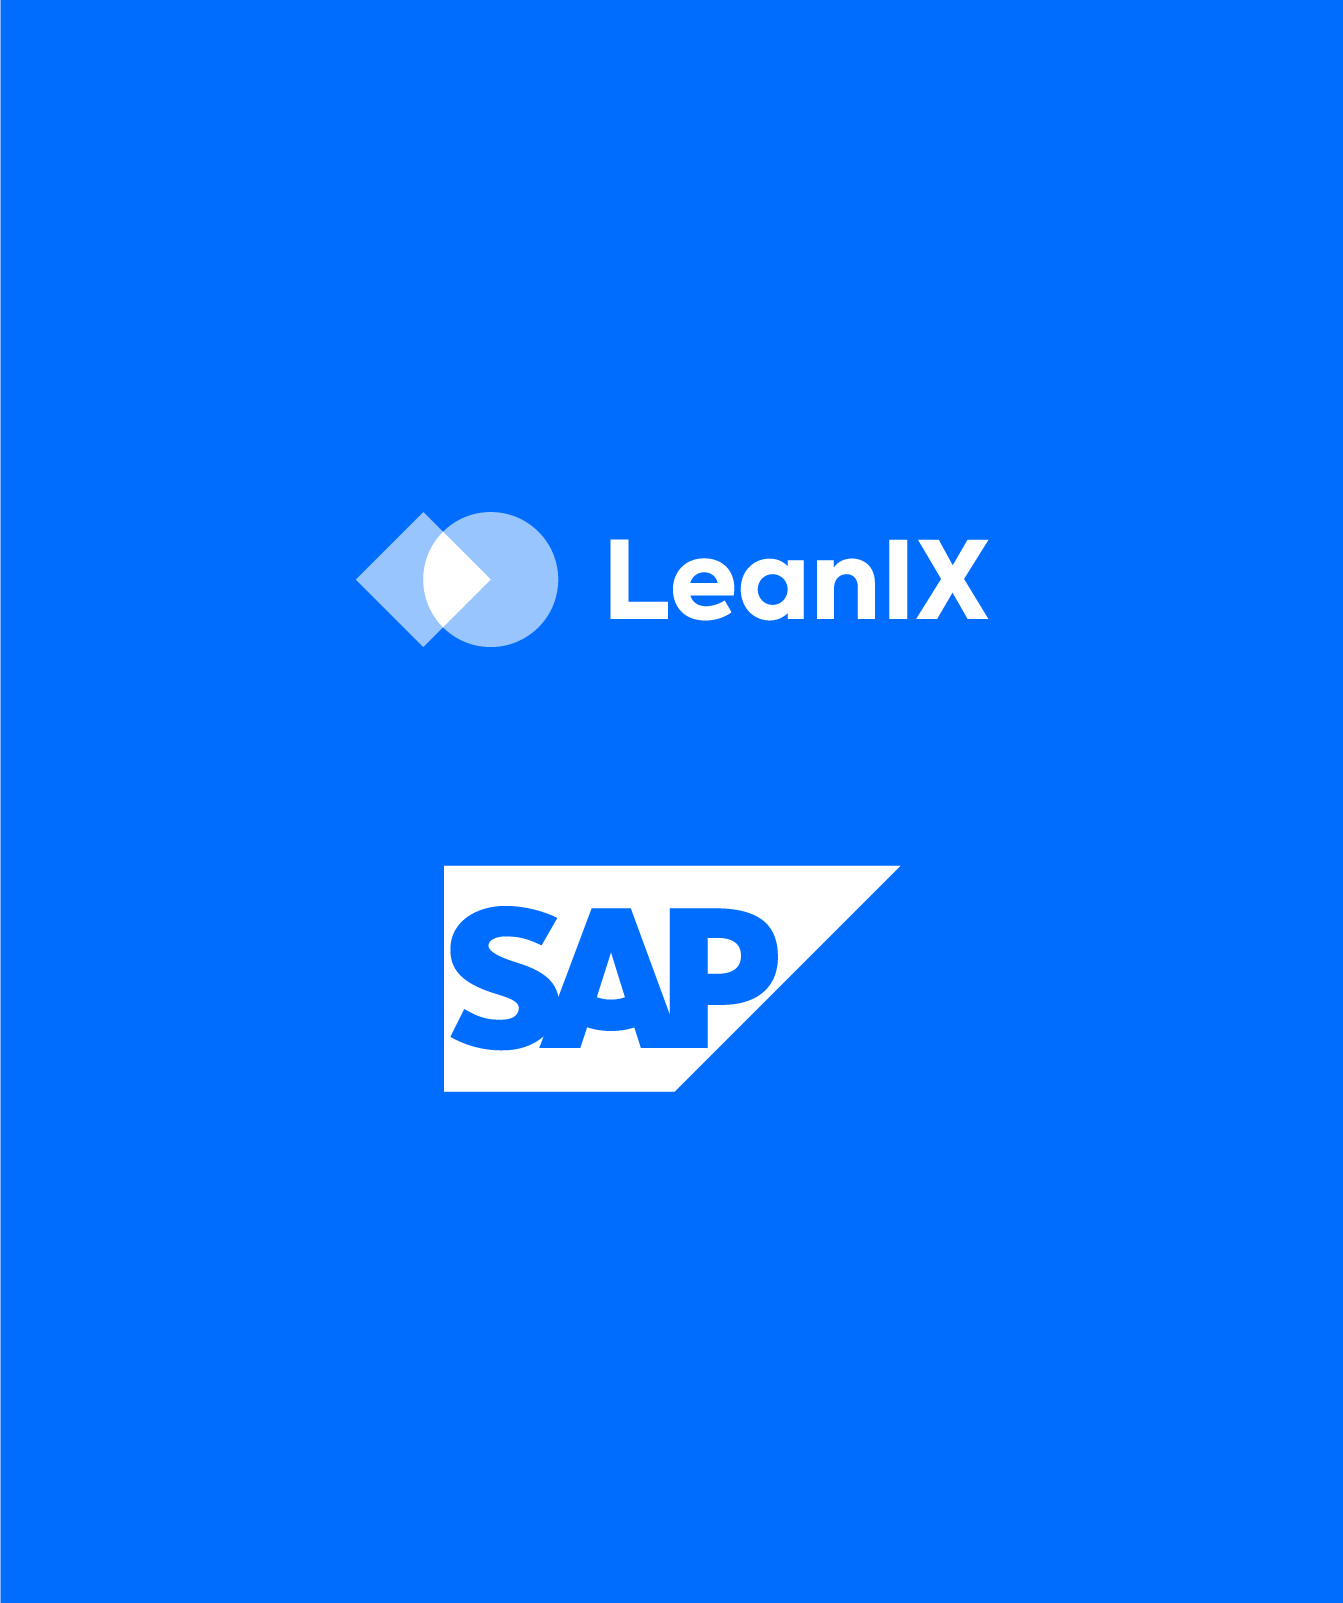 SAP rachète LeanIX